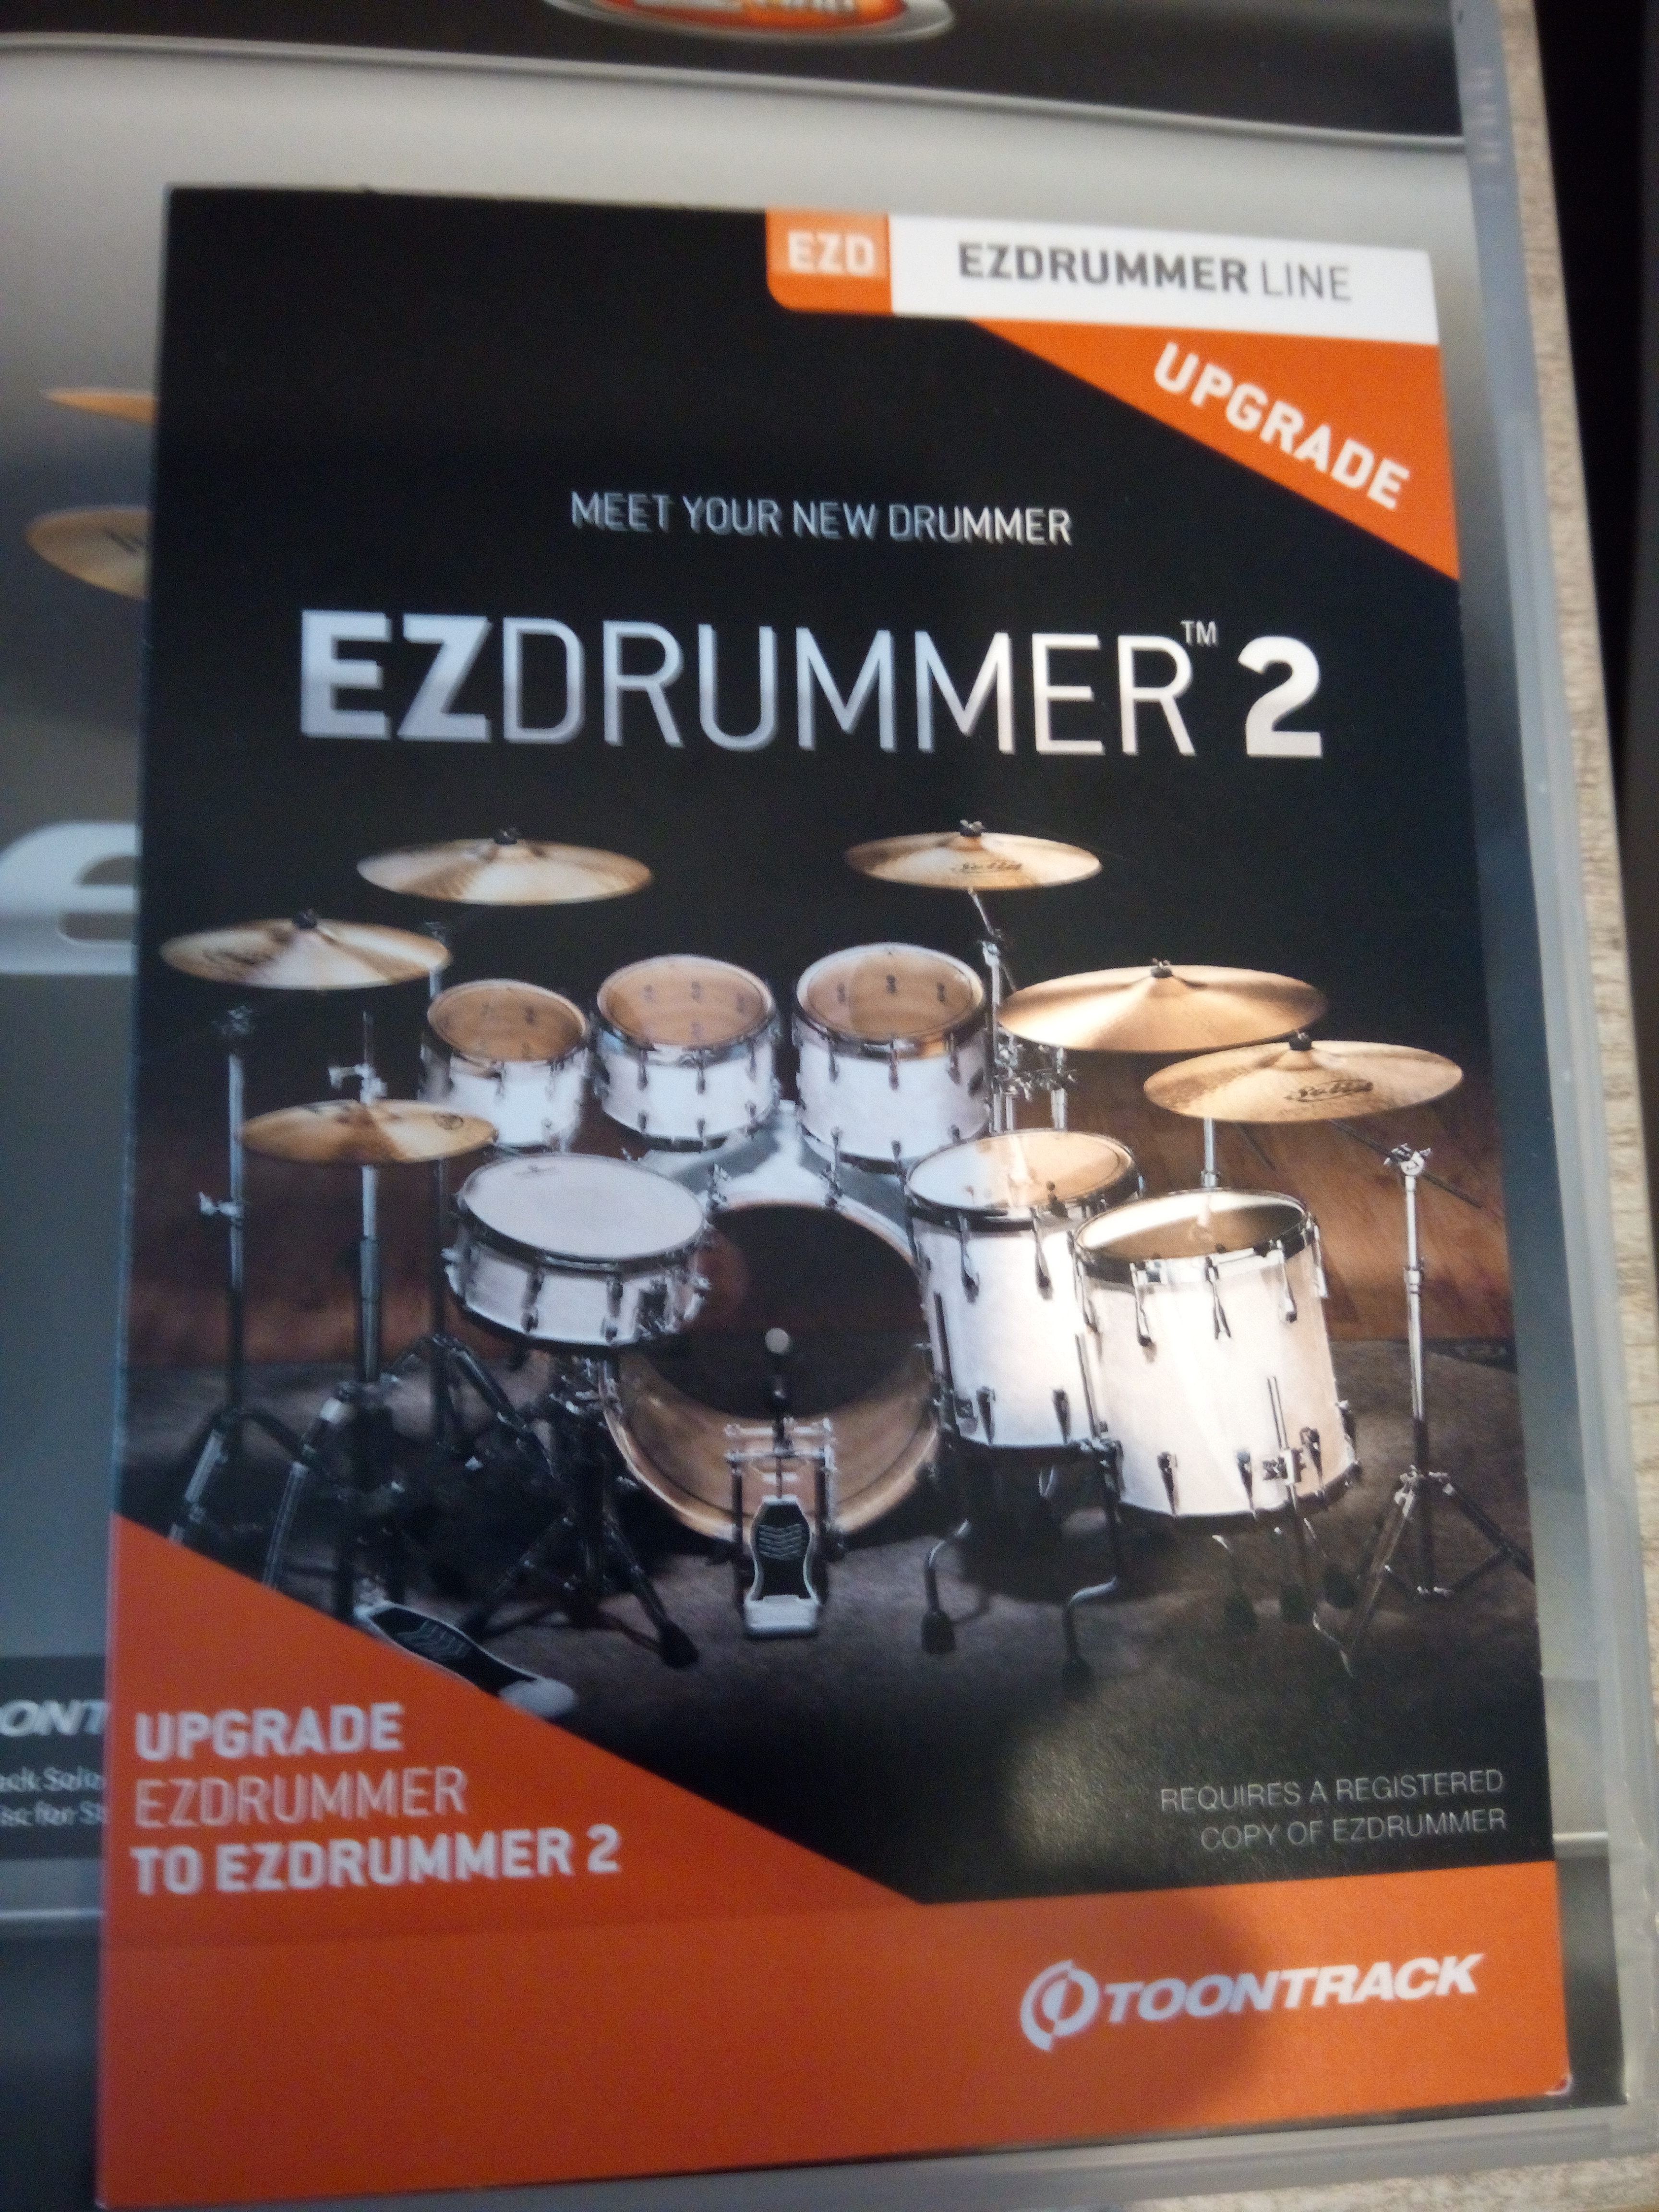 upgrade ez drumer to superior drummer